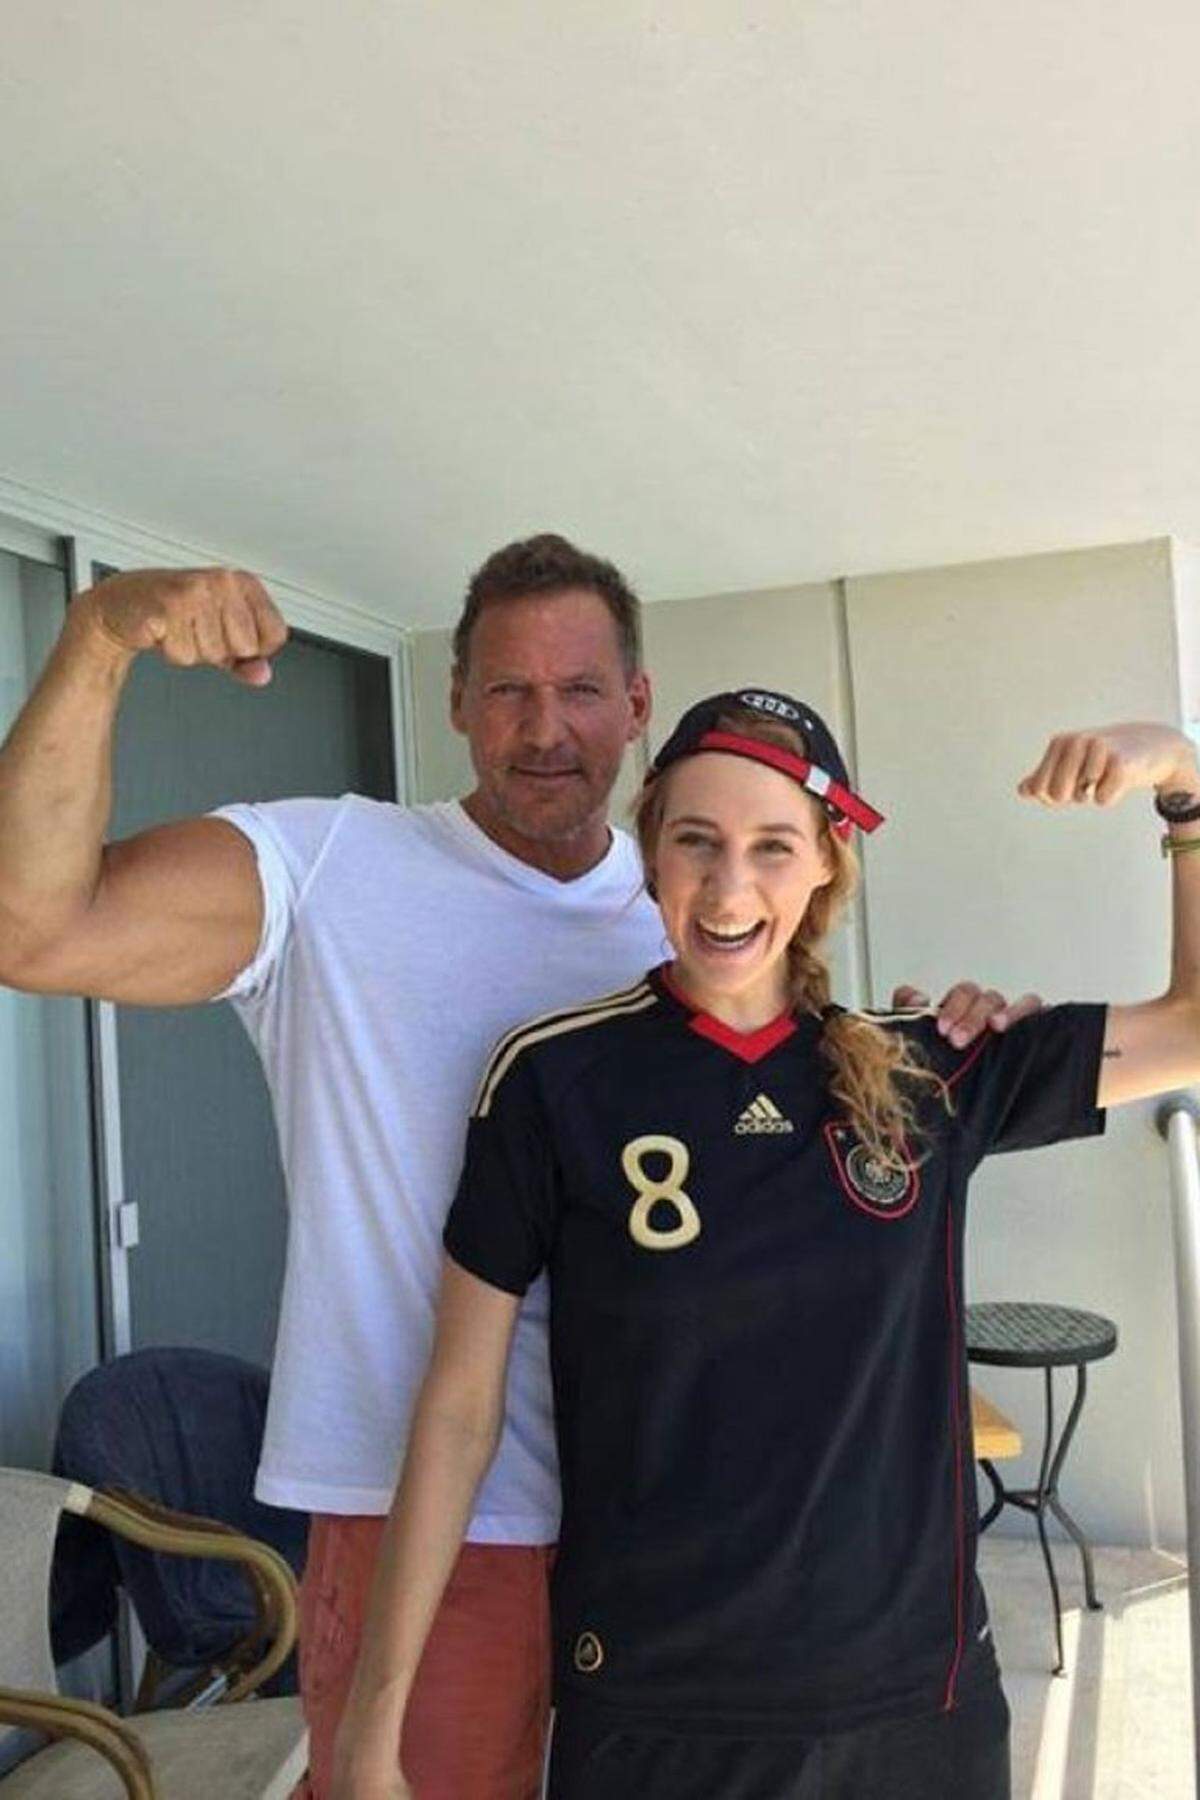 Die deutsche Nationalmannschaft ist nach ihrem Sieg mindestens so stark wie Ralf Möller.